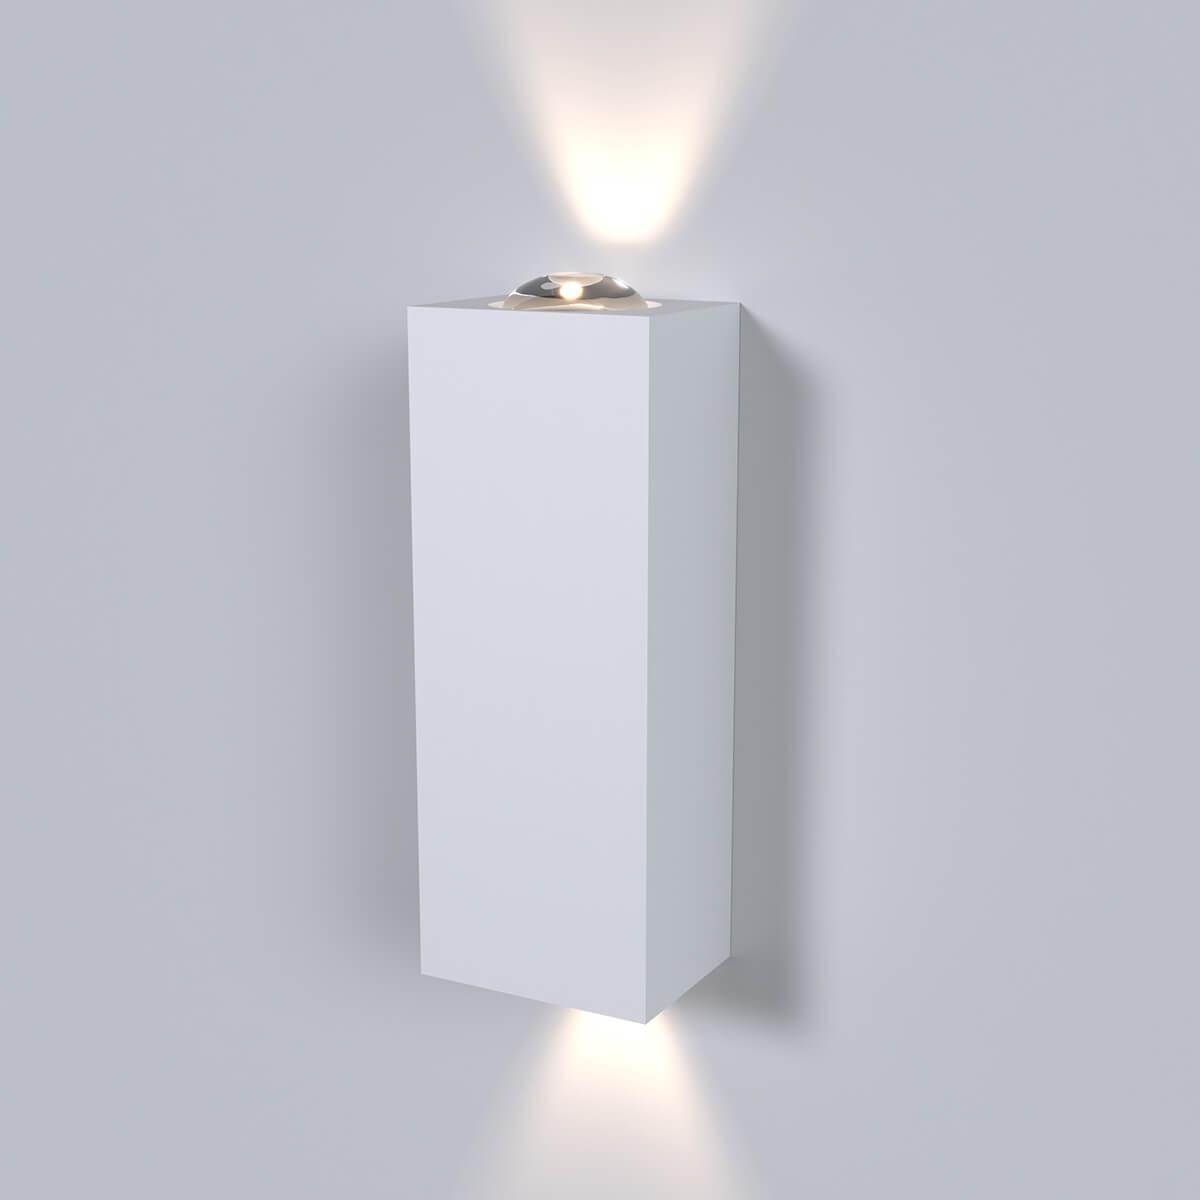 Настенный светодиодный светильник Elektrostandard Petite LED 40110/LED белый 4690389176814 светодиодный шар 120 см тёплый белый rl b120 500 ww